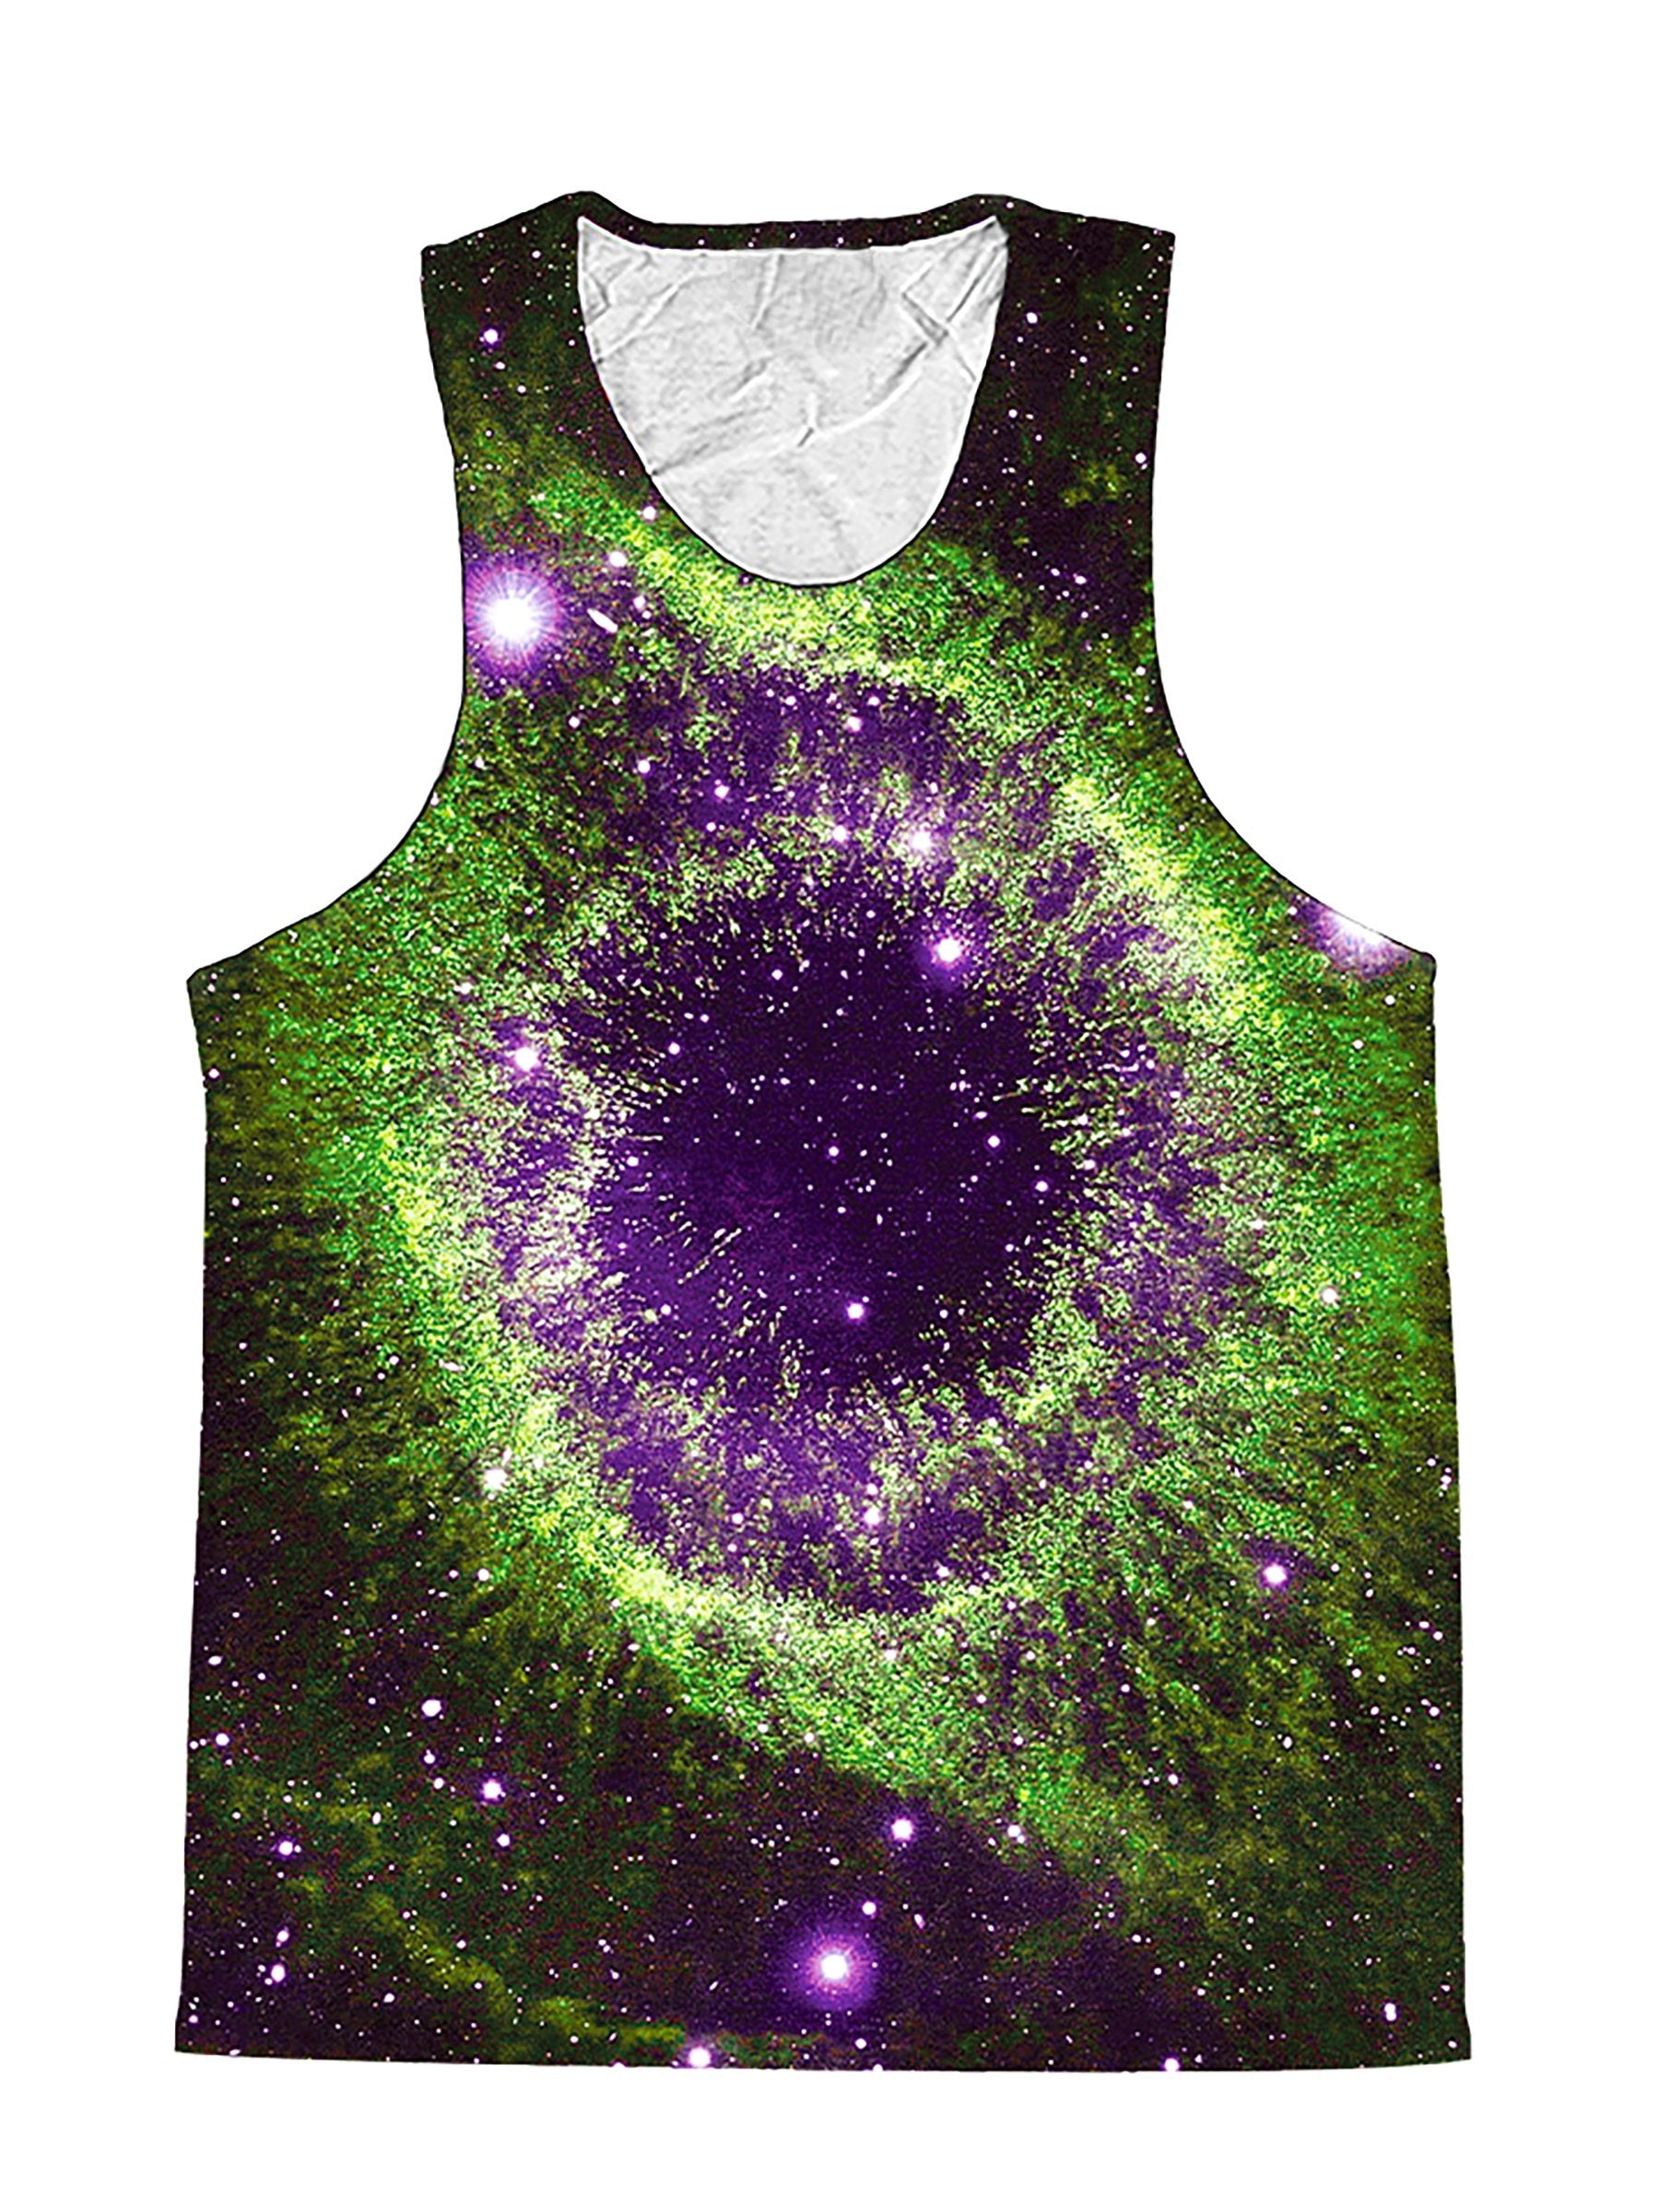 Slime Nebula Vortex Galaxy Premium Tank Top - Boogie Threads